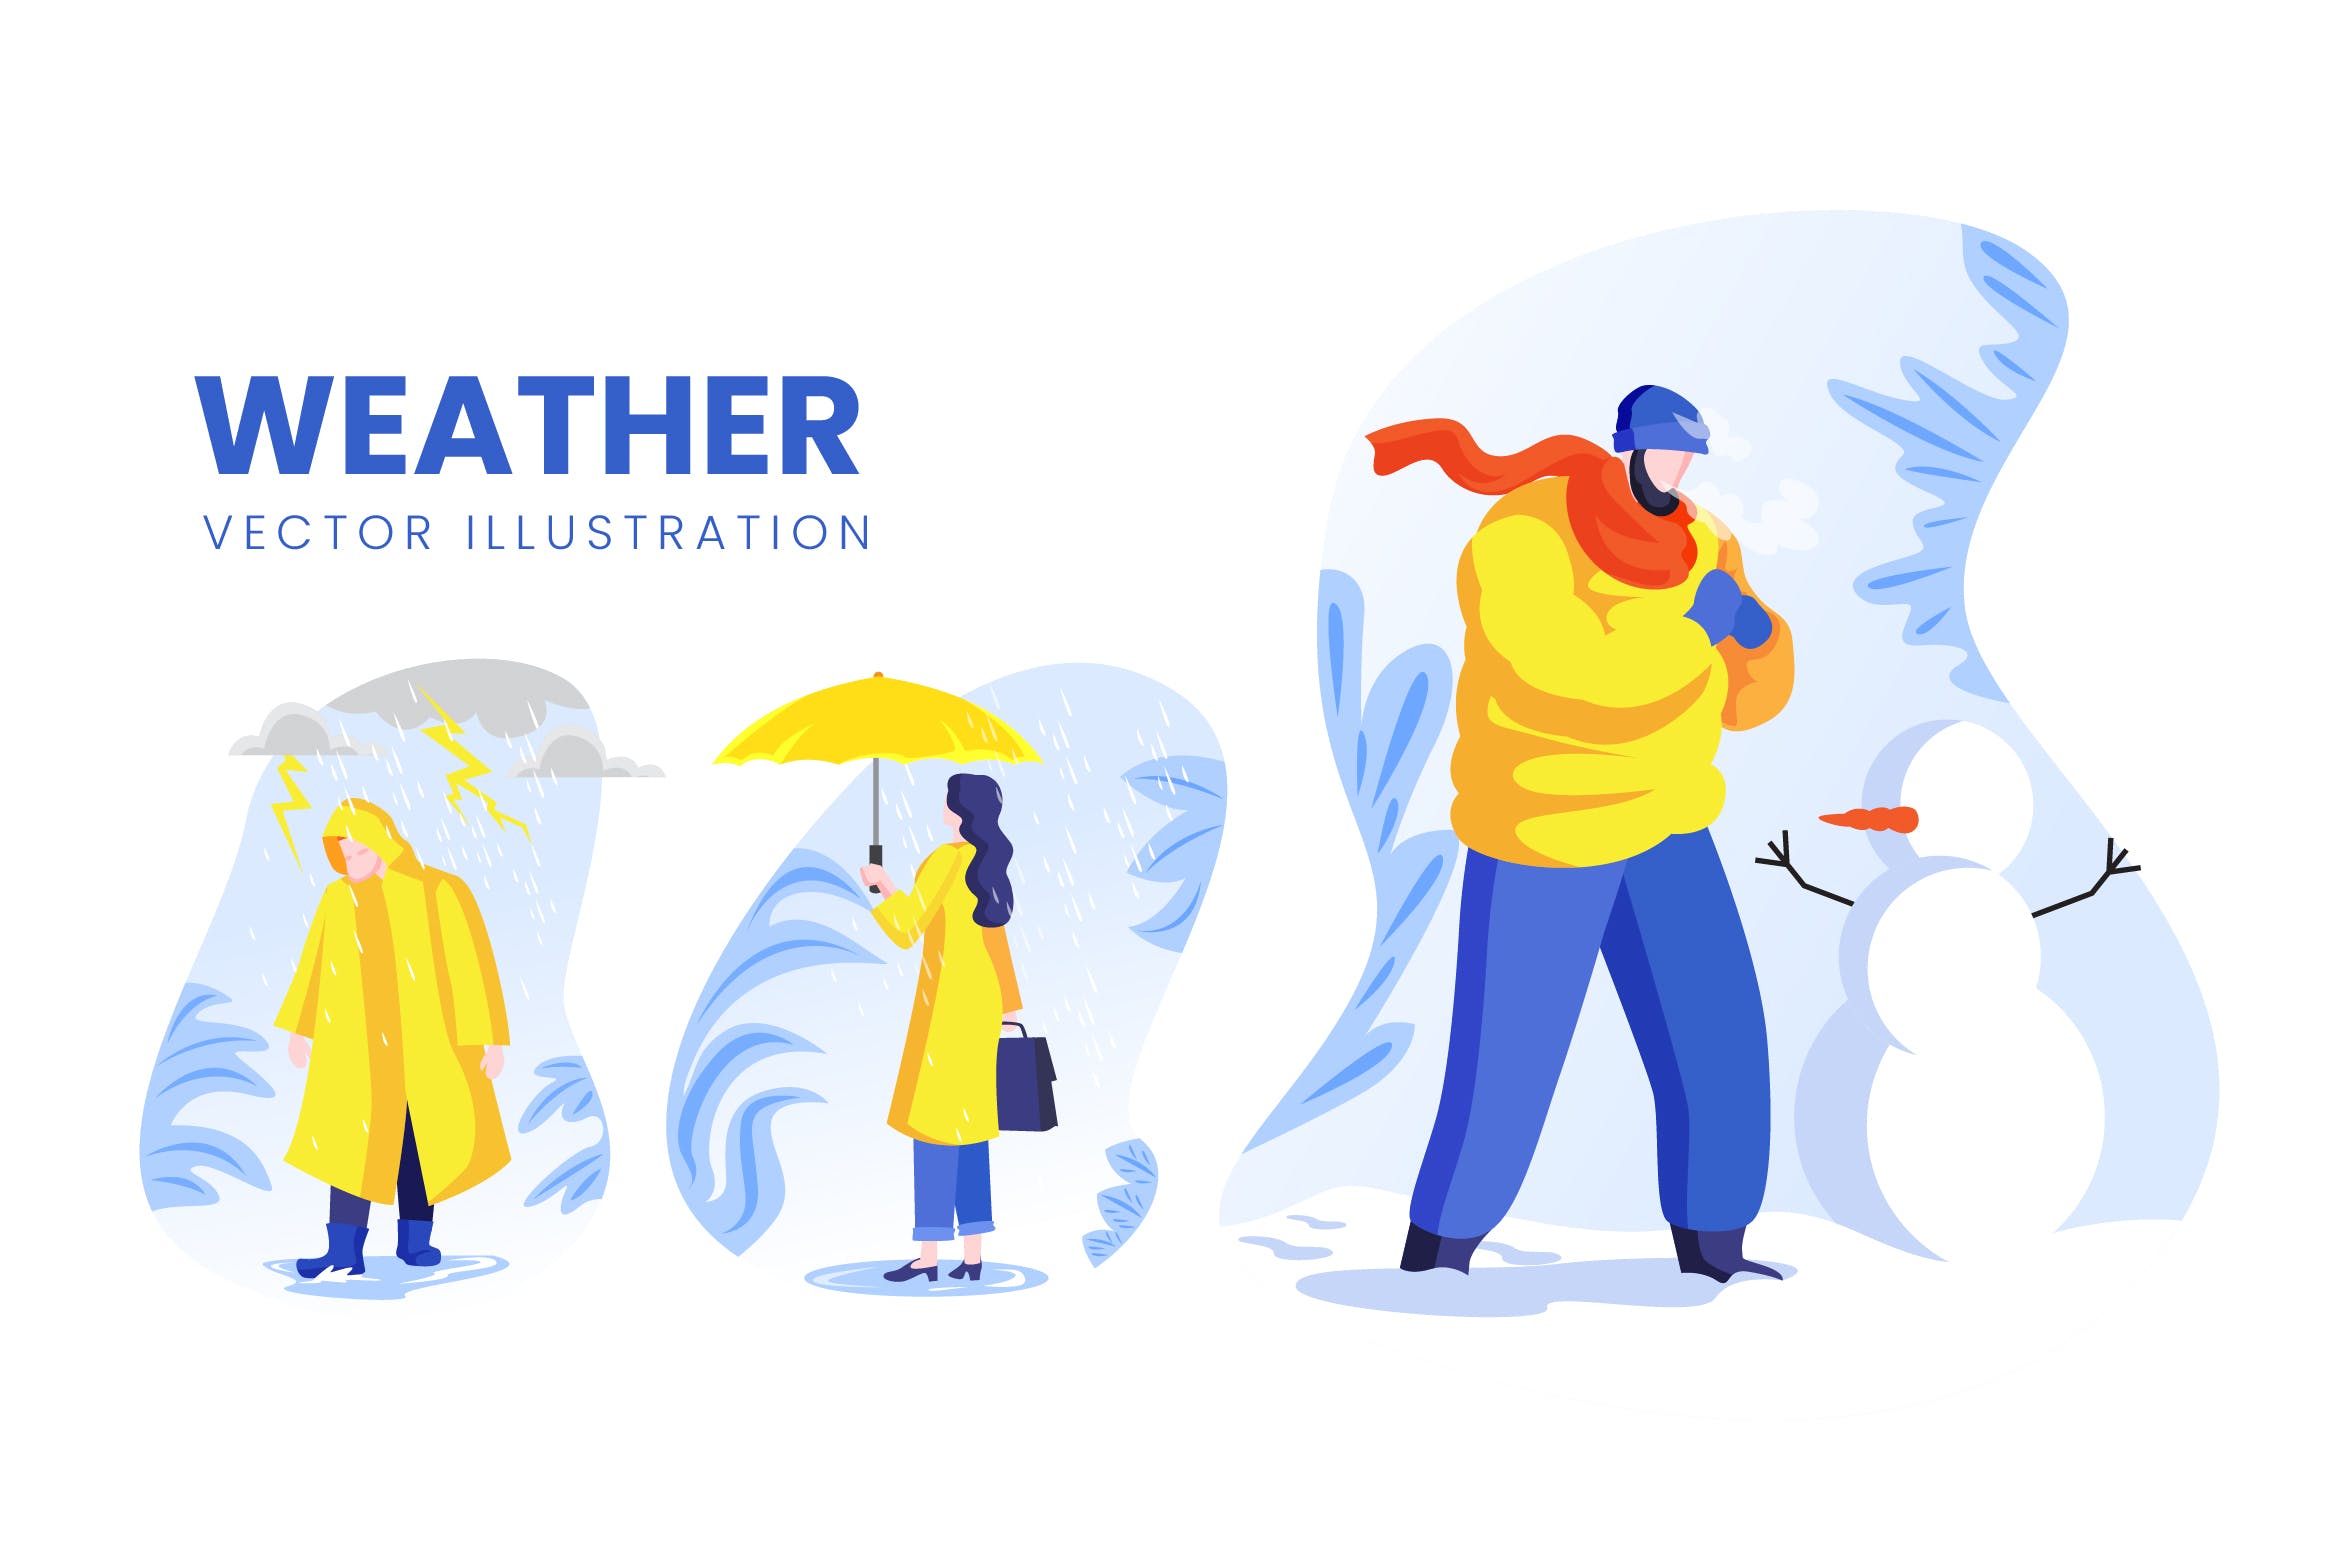 天气预报主题人物形象素材库精选手绘插画矢量素材 Weather Condition Vector Character Set插图